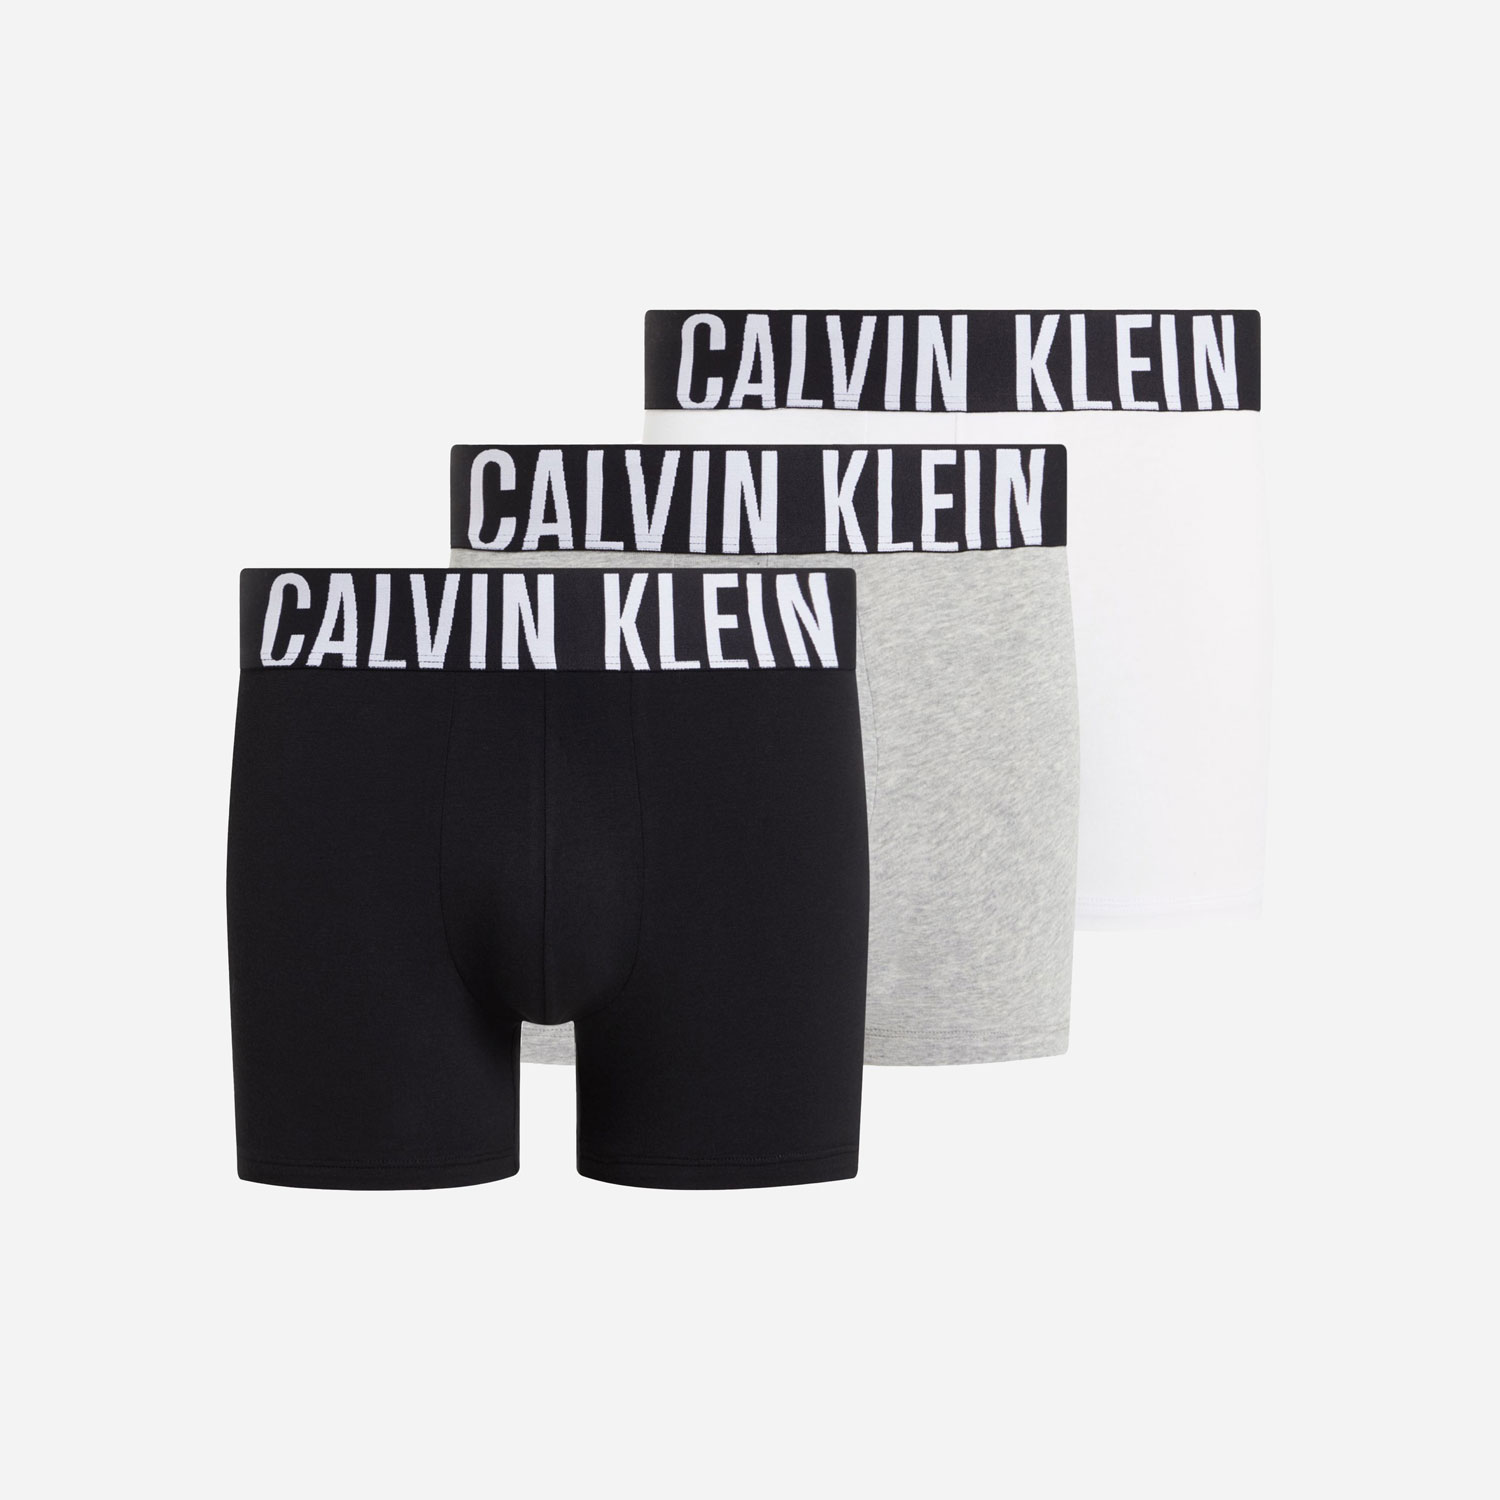 Calvin Klein 3 Pack Boxer Brief - Black/ Grey Heather/White